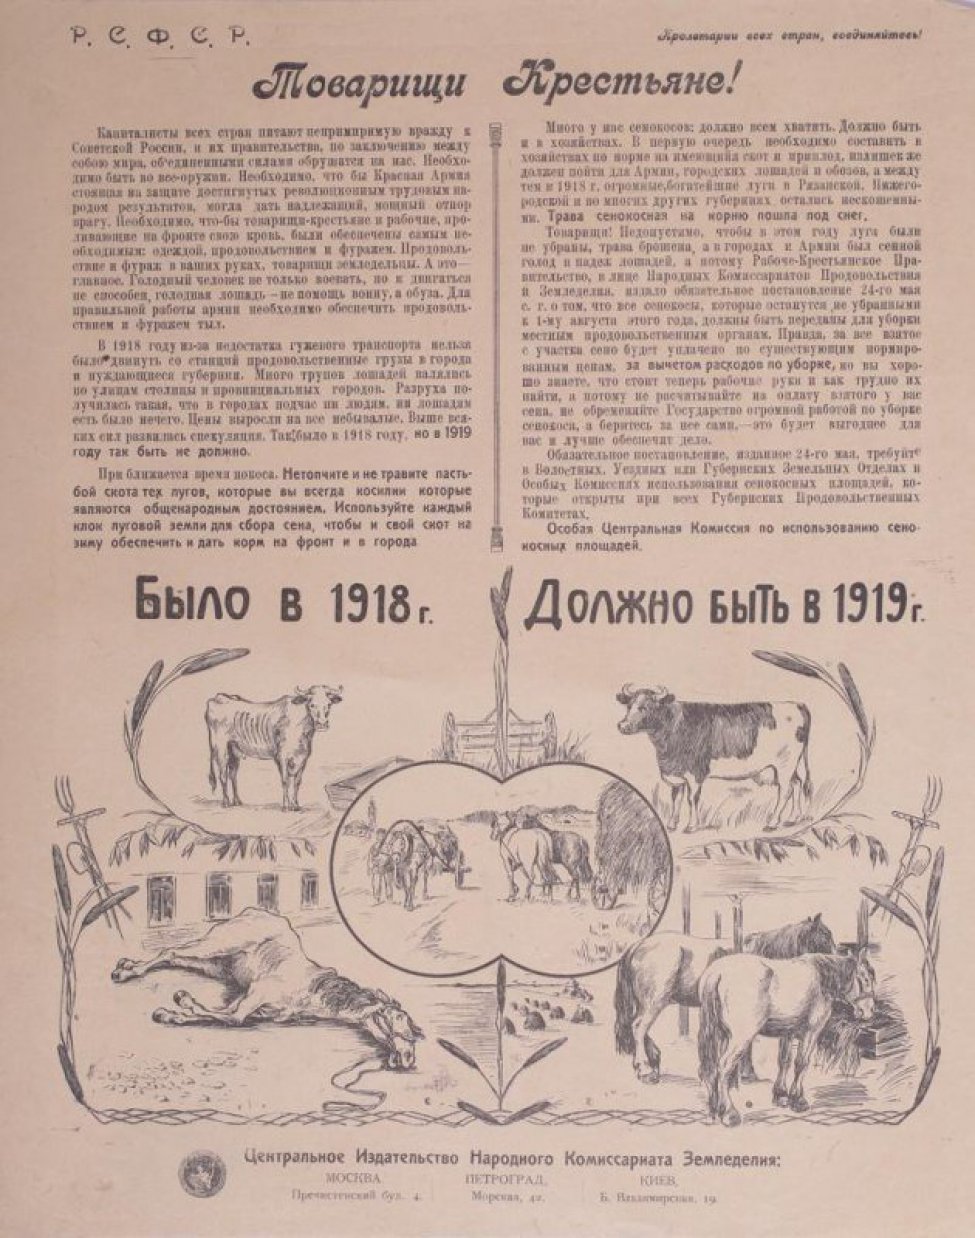 Изображено: вверху текст: "Товарищи крестьяне! Капиталисты всех стран... Особая Центр.комиссия". Внизу слева тощая корова, падающая лошадь справа здоровая корова и две лошади.